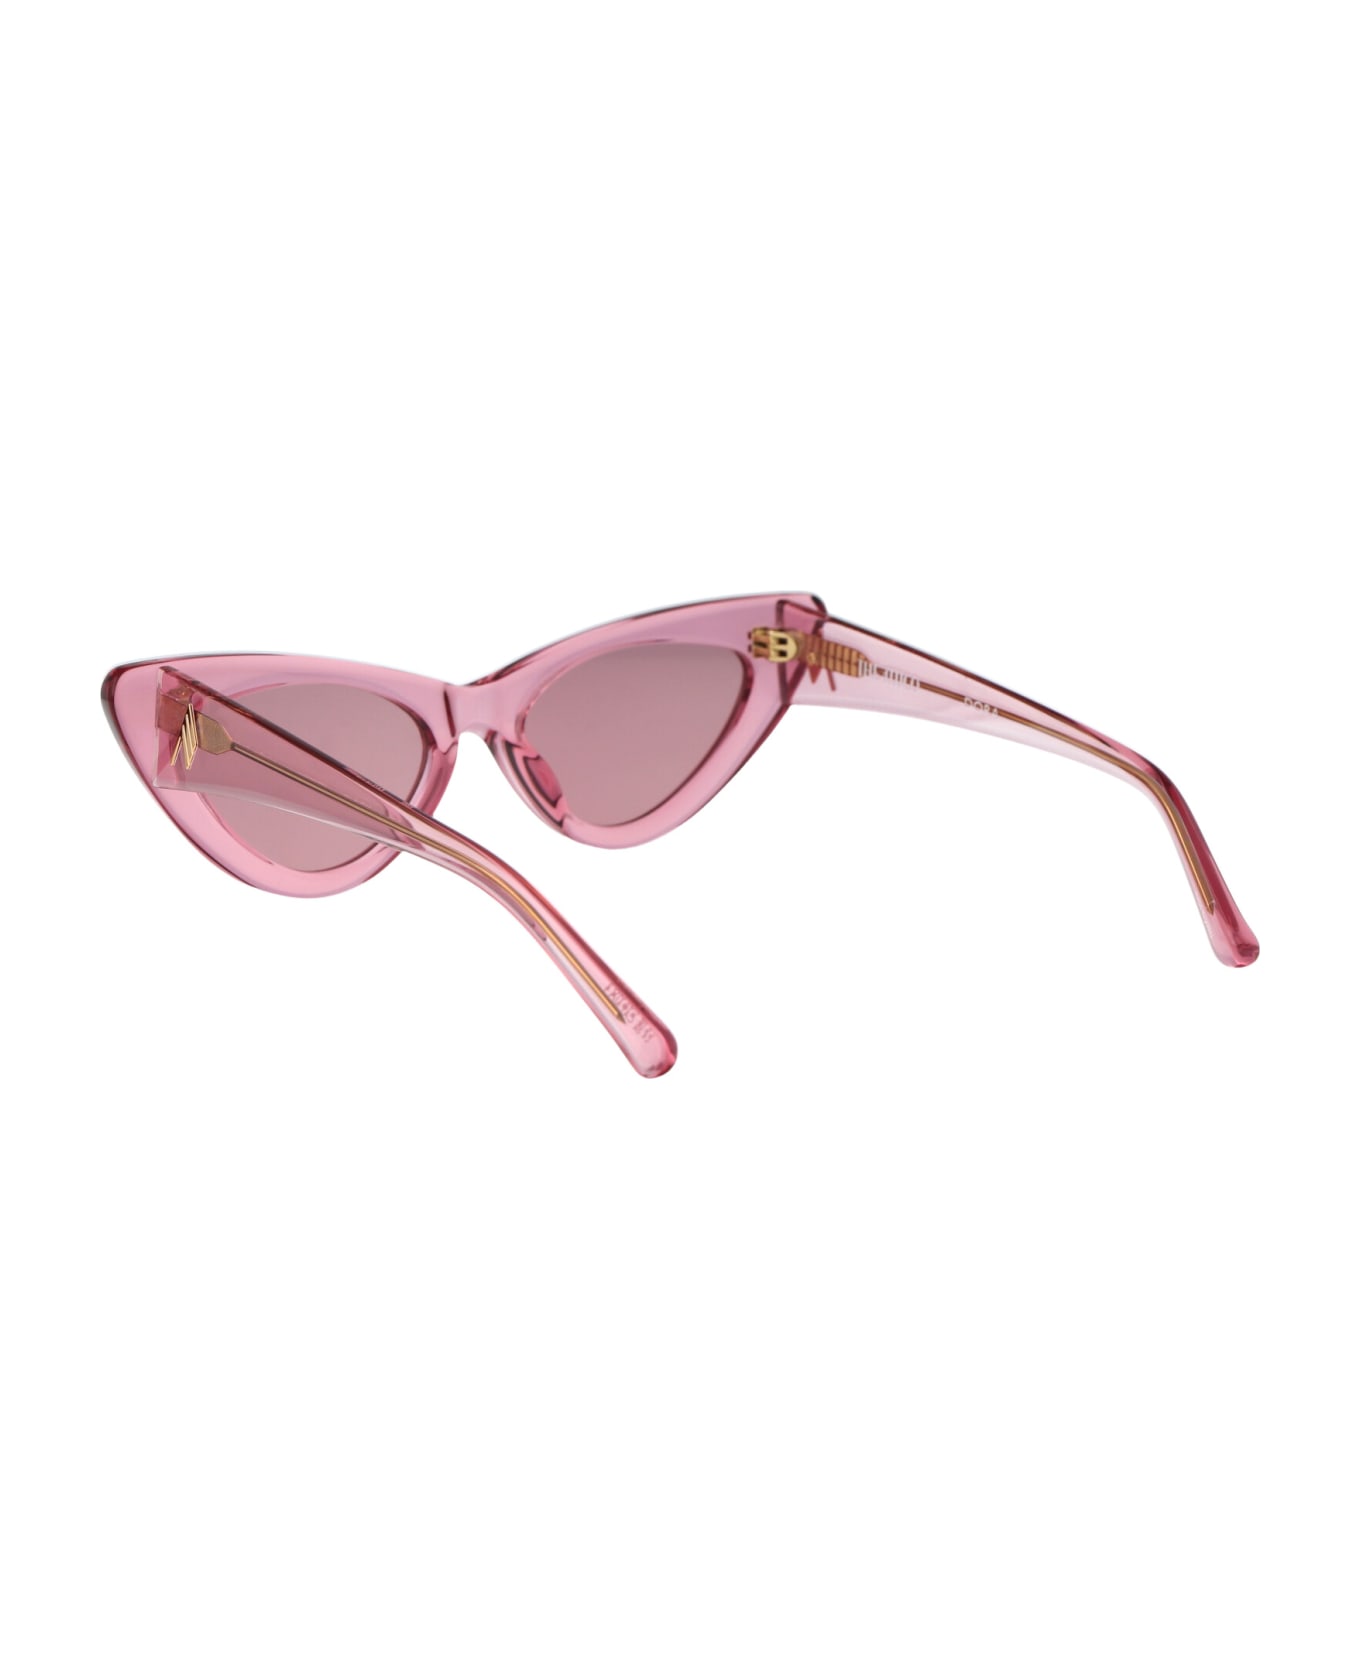 The Attico Dora Sunglasses - POWDERPINK/SILVER/PINK